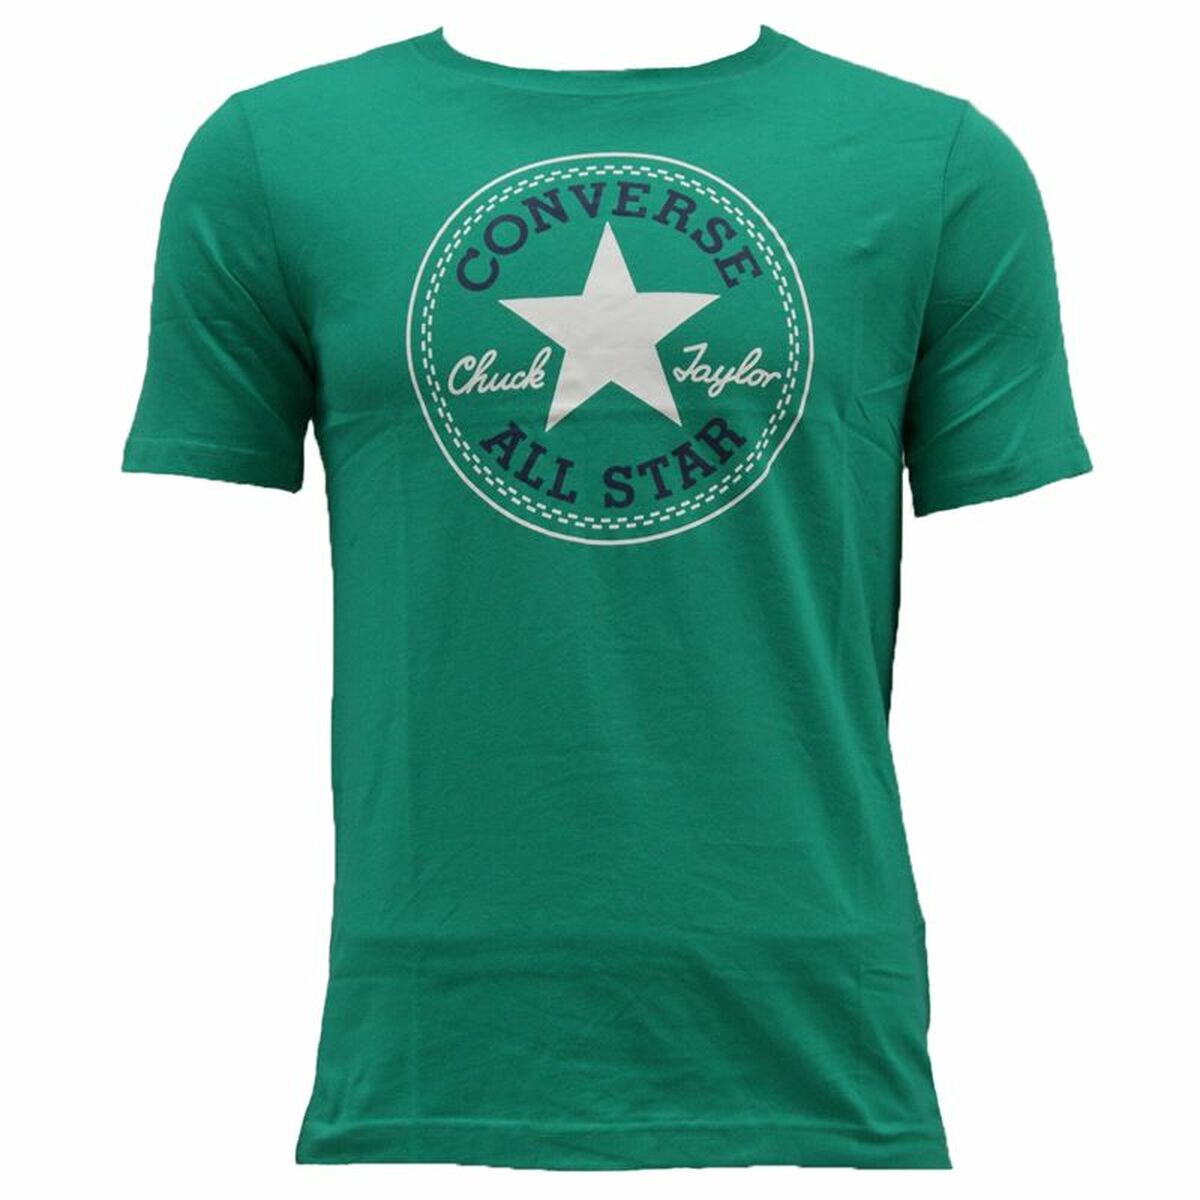 Kurzarm-T-Shirt für Kinder Converse Cnvb Chuck Patch grün